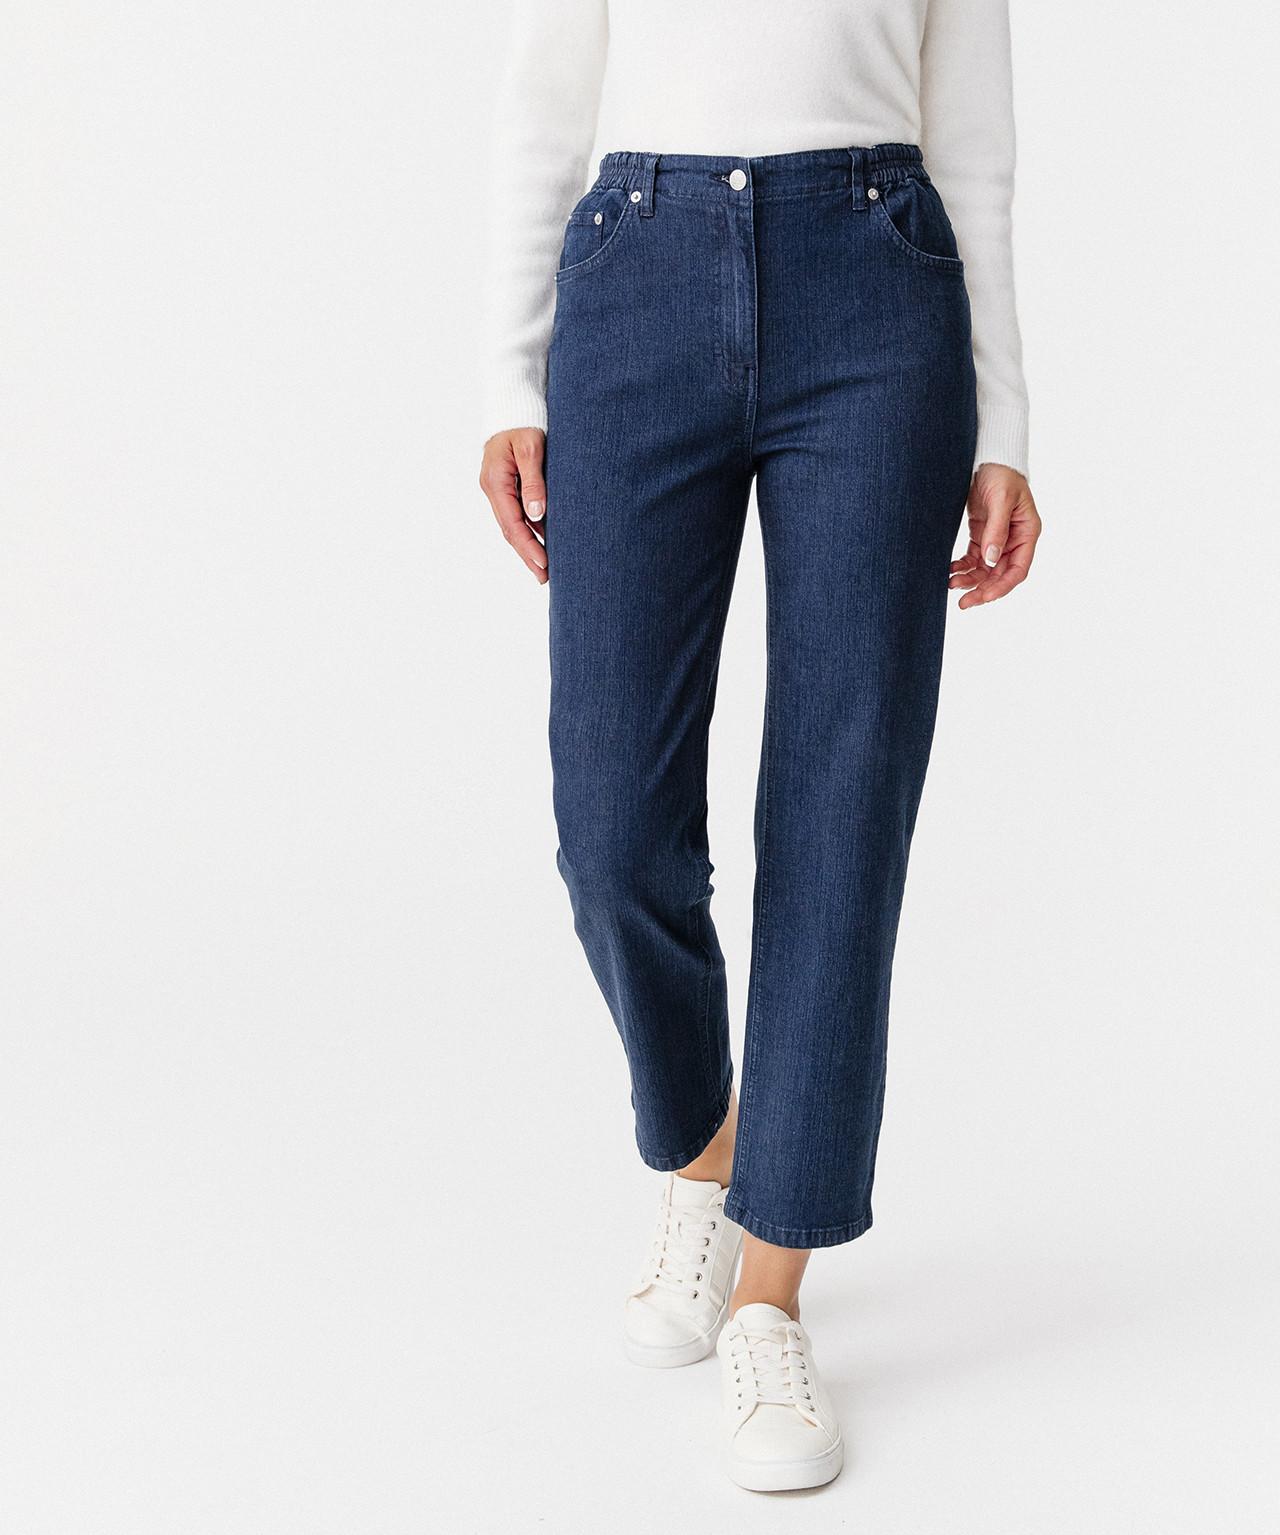 5-pocket-jeans In 2 Körpergrößen. Damen Blau 44 von Damart